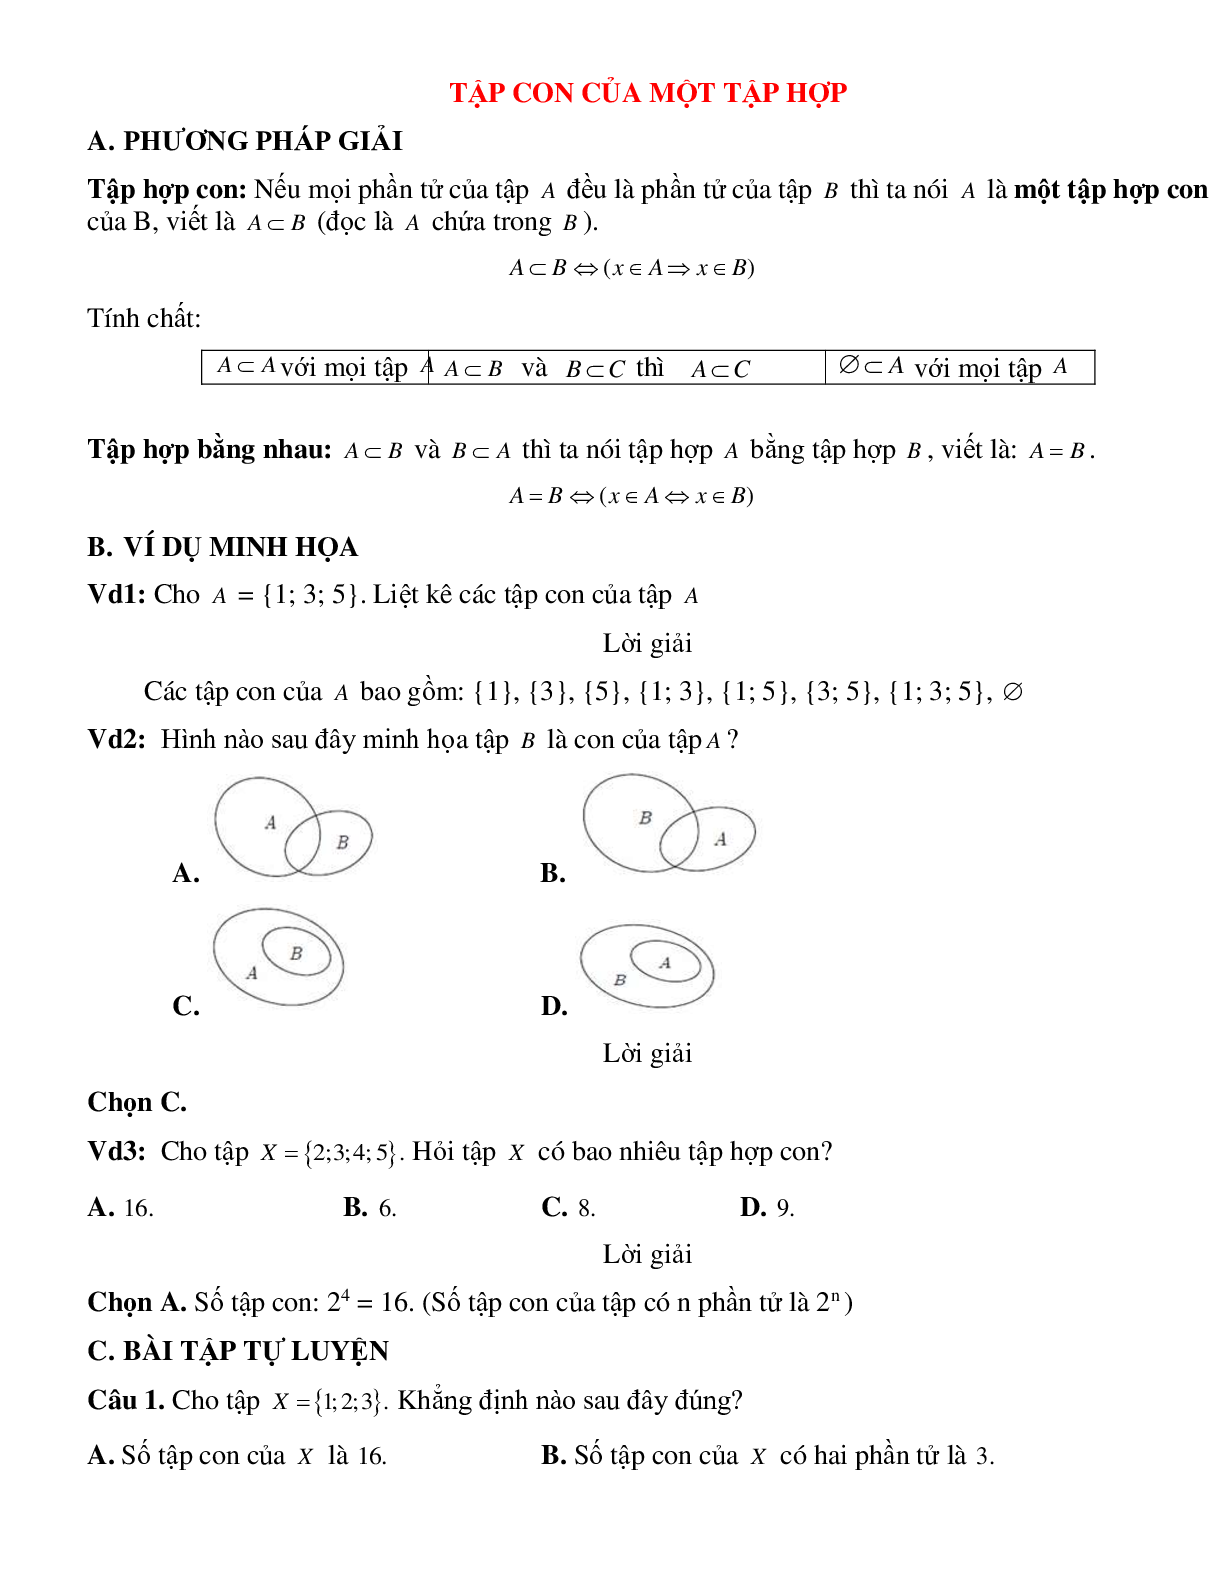 Bài tập tự luyện tập con của một tập hợp Toán 10 (trang 1)